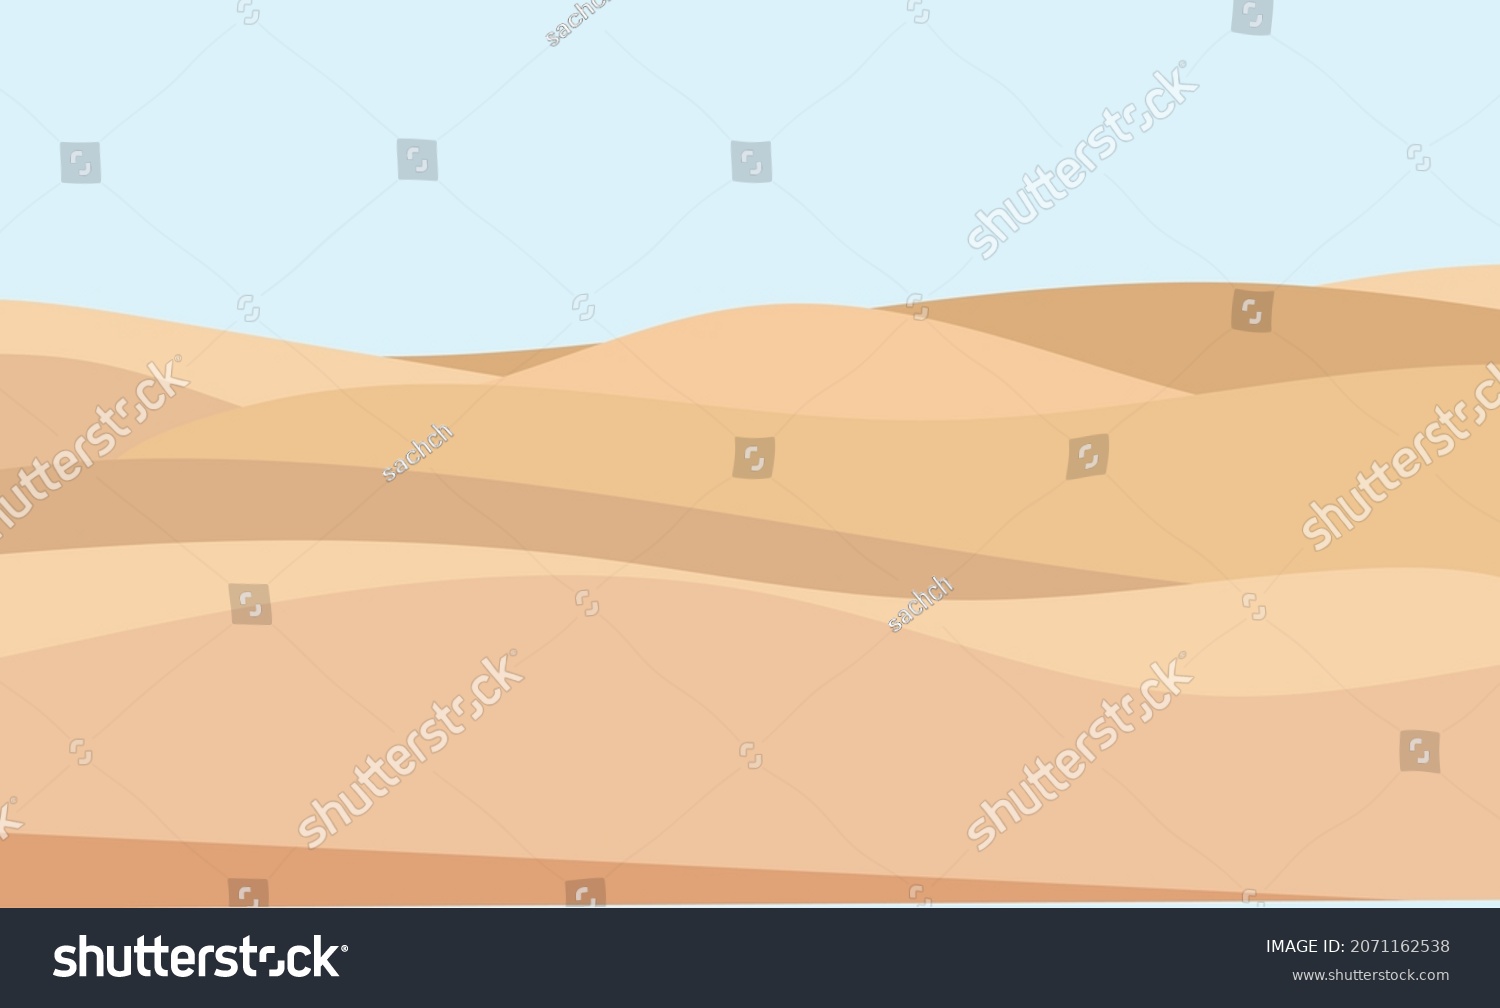 SVG of desert sand dunes landscapes vector illustration background svg